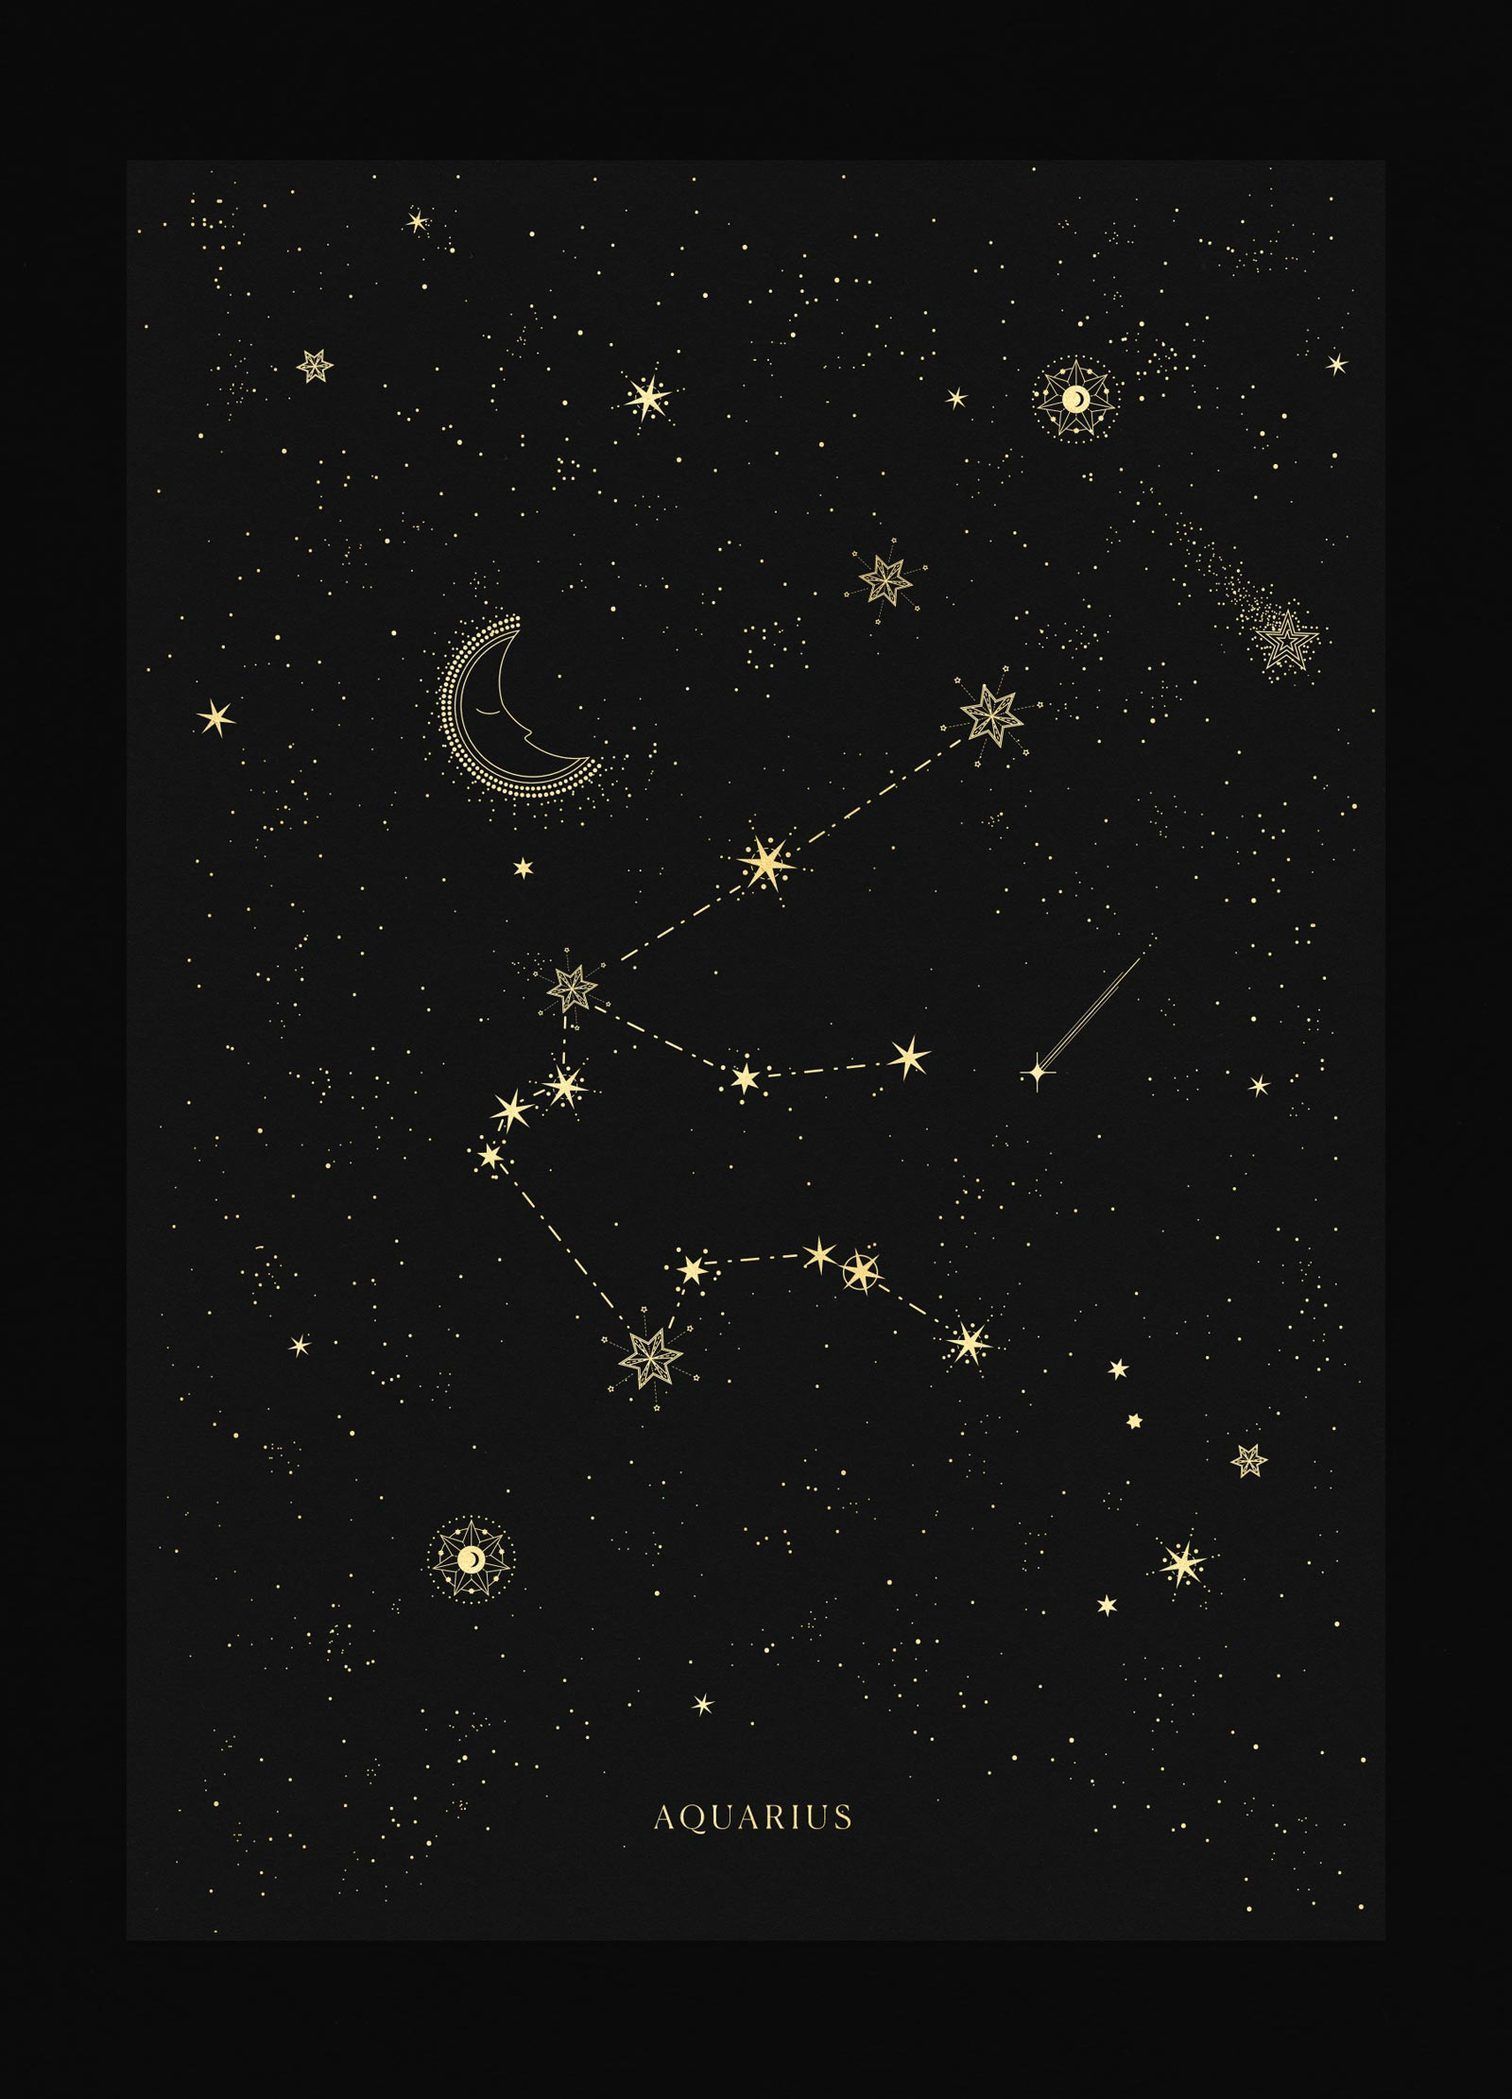 Aquarius Constellation. Aquarius constellation tattoo